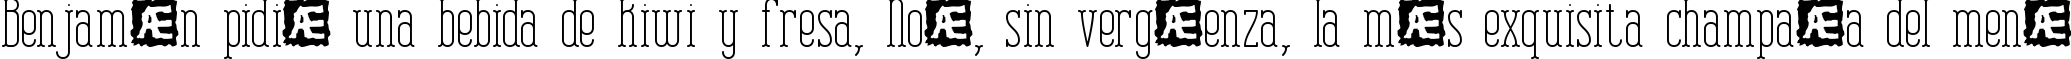 Пример написания шрифтом Combustion Plain BRK текста на испанском